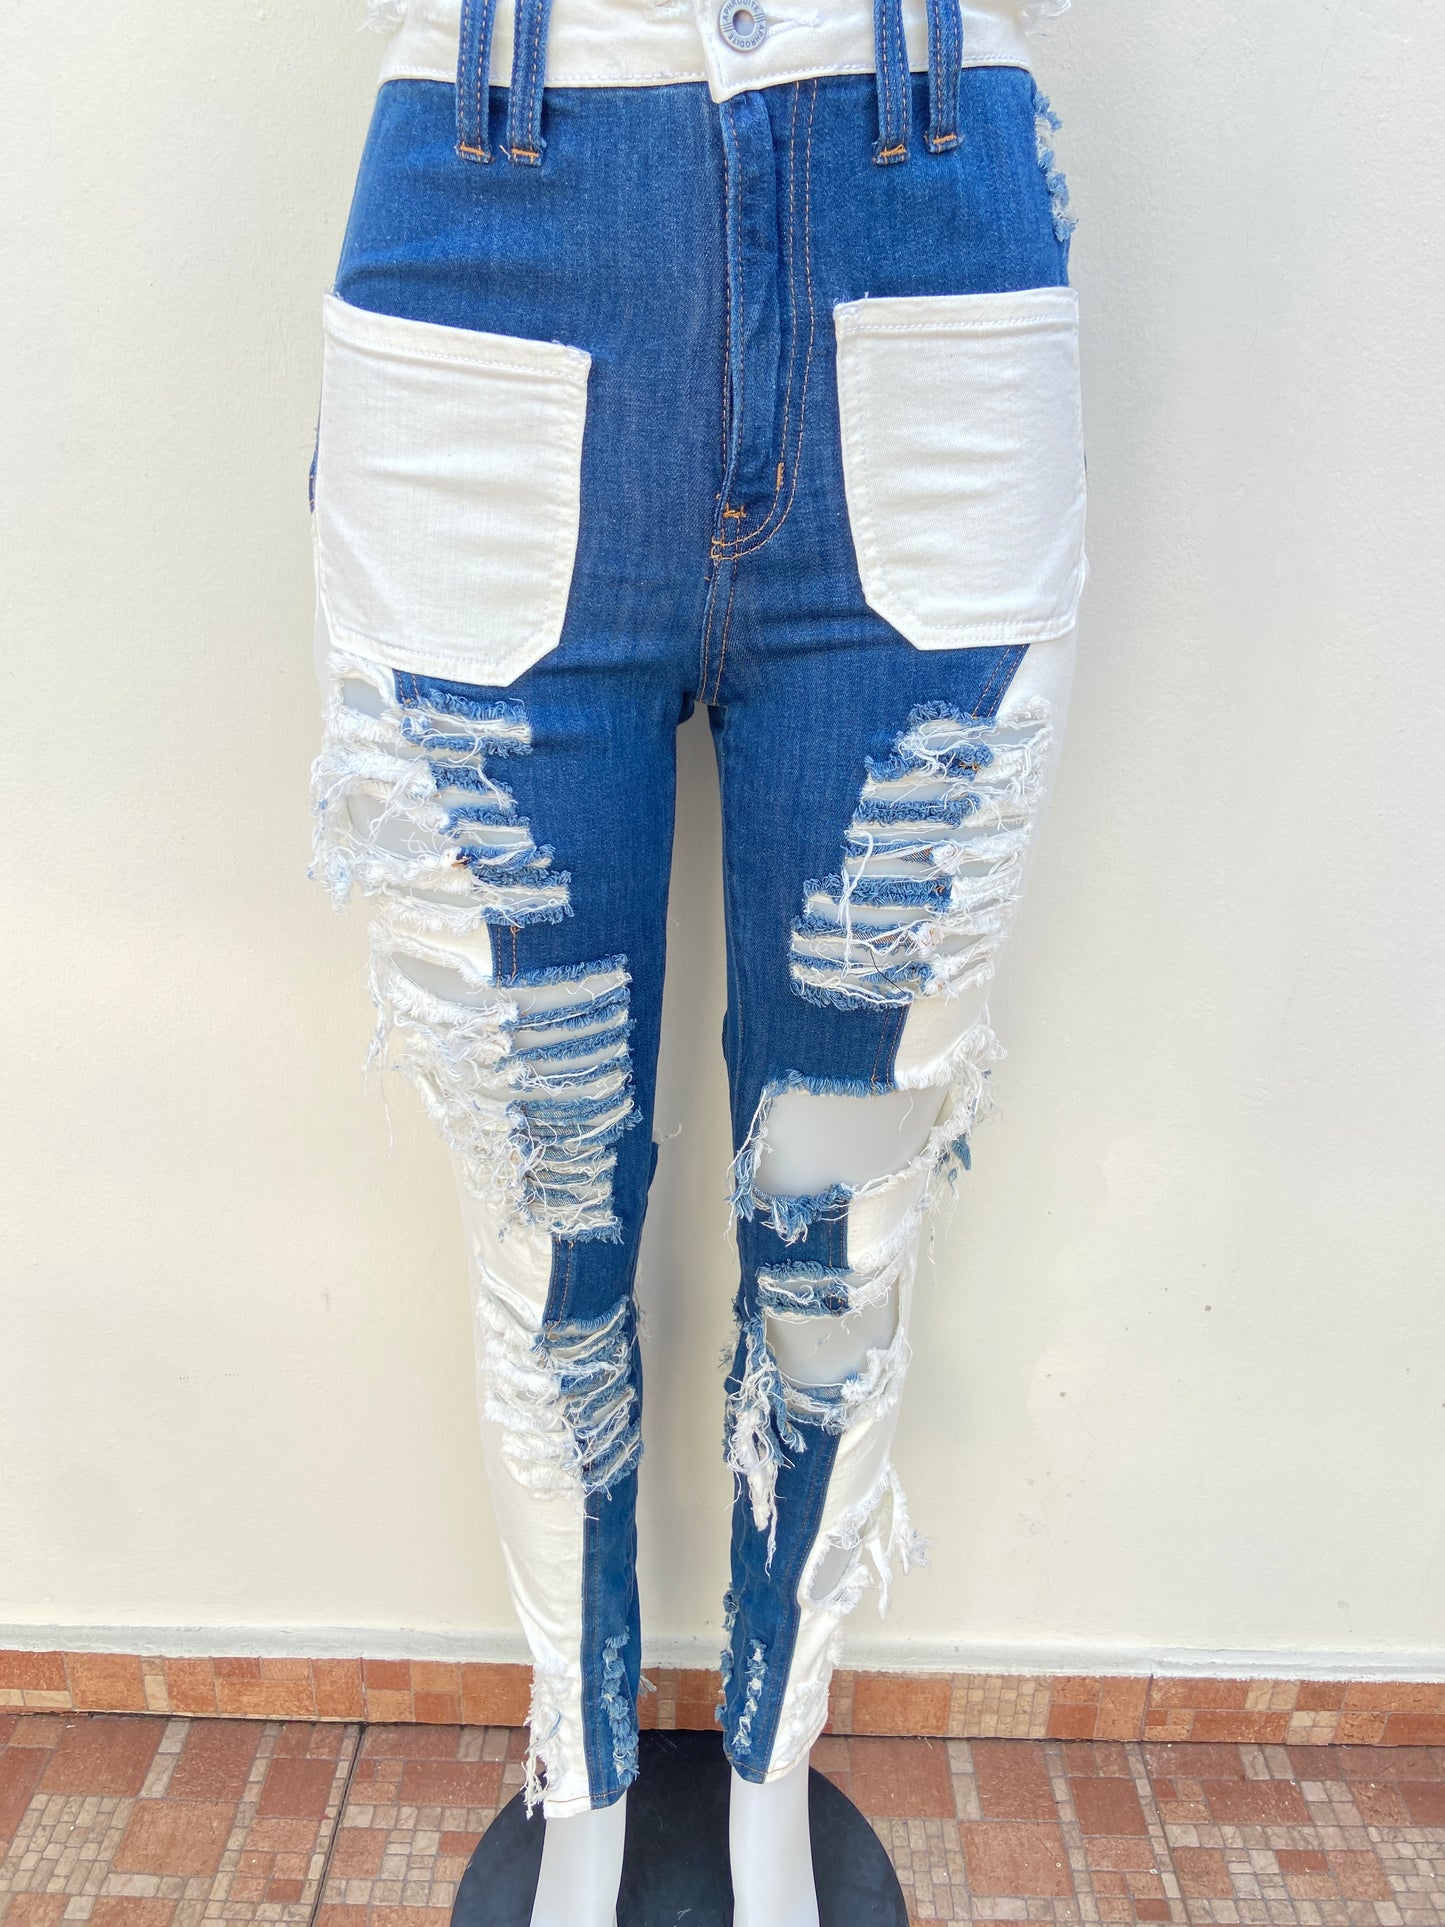 Pantalon Jean Fashion Nova original azul marino y blanco con rasgados y bolsillos en color blanco.